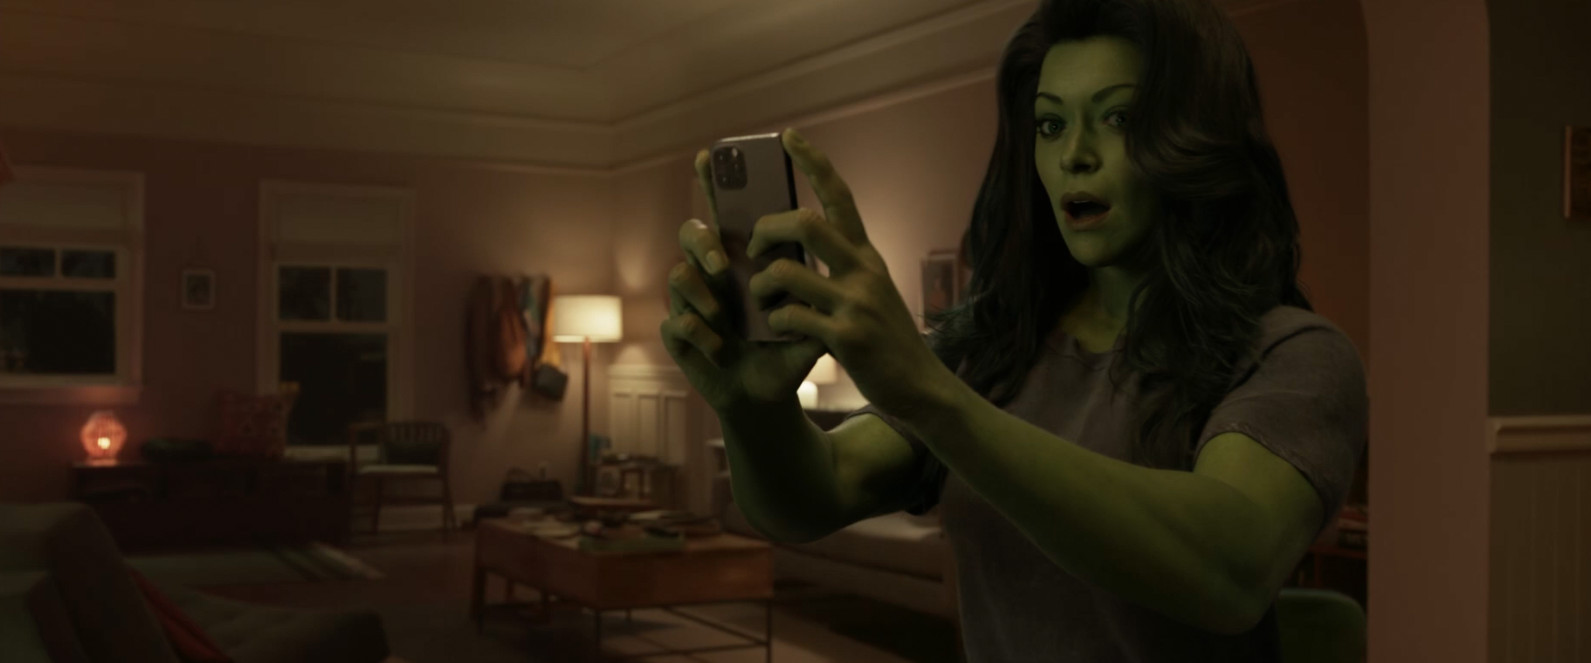 Tatiana Maslany como Mulher-Hulk